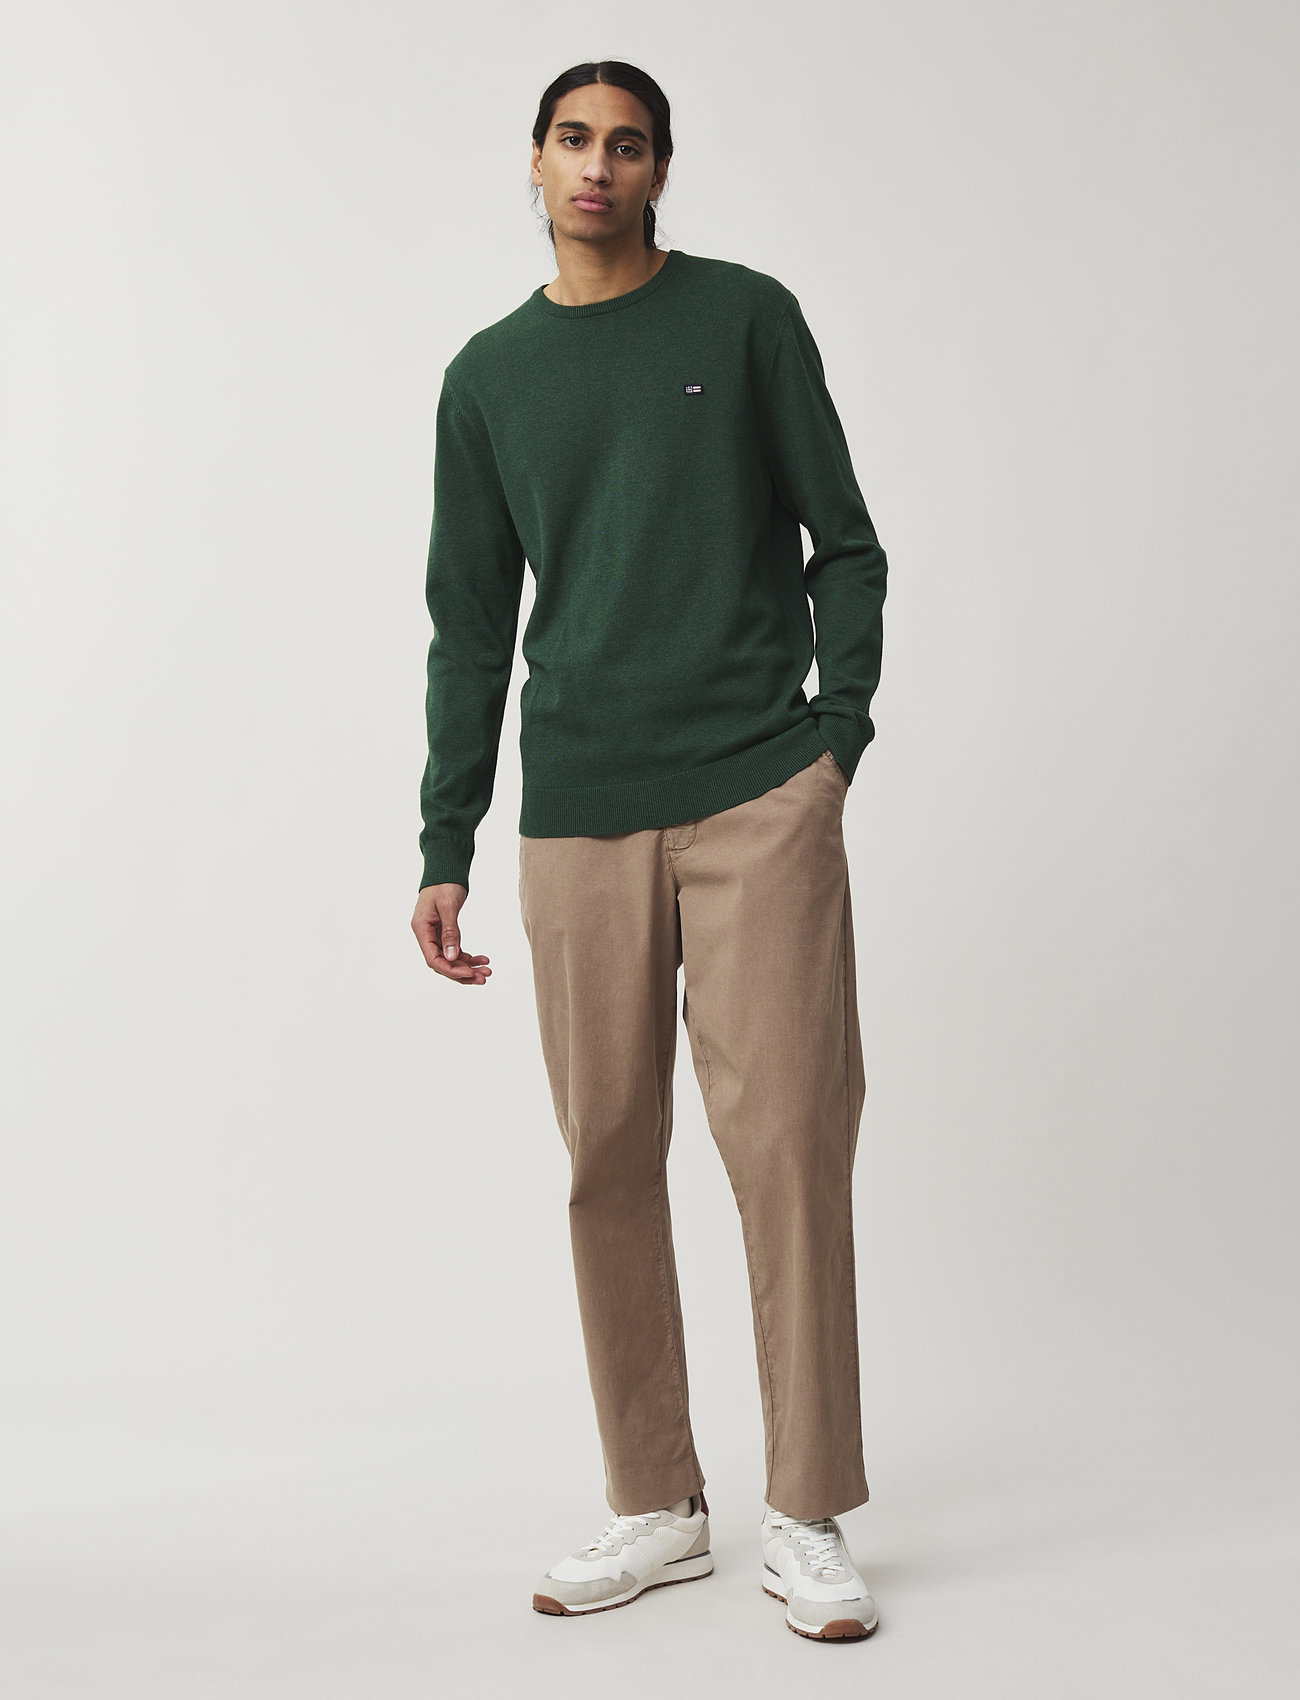 Lexington Clothing - Bradley Cotton Crew Sweater - truien met ronde hals - green - 1